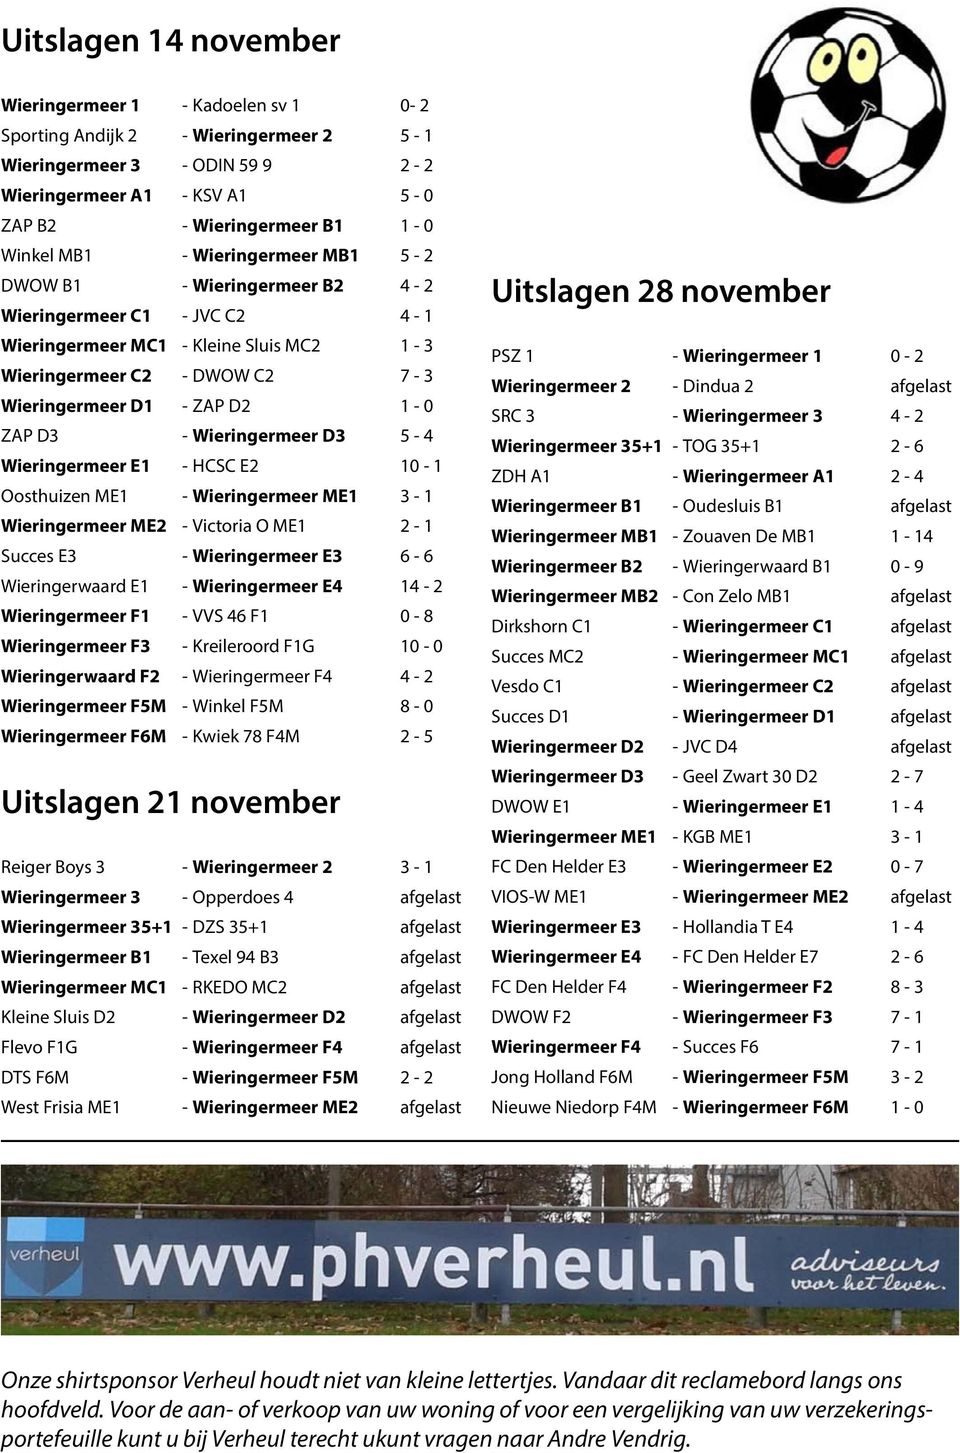 Wieringermeer D3 5-4 Wieringermeer E1 - HCSC E2 10-1 Oosthuizen ME1 - Wieringermeer ME1 3-1 Wieringermeer ME2 - Victoria O ME1 2-1 Succes E3 - Wieringermeer E3 6-6 Wieringerwaard E1 - Wieringermeer